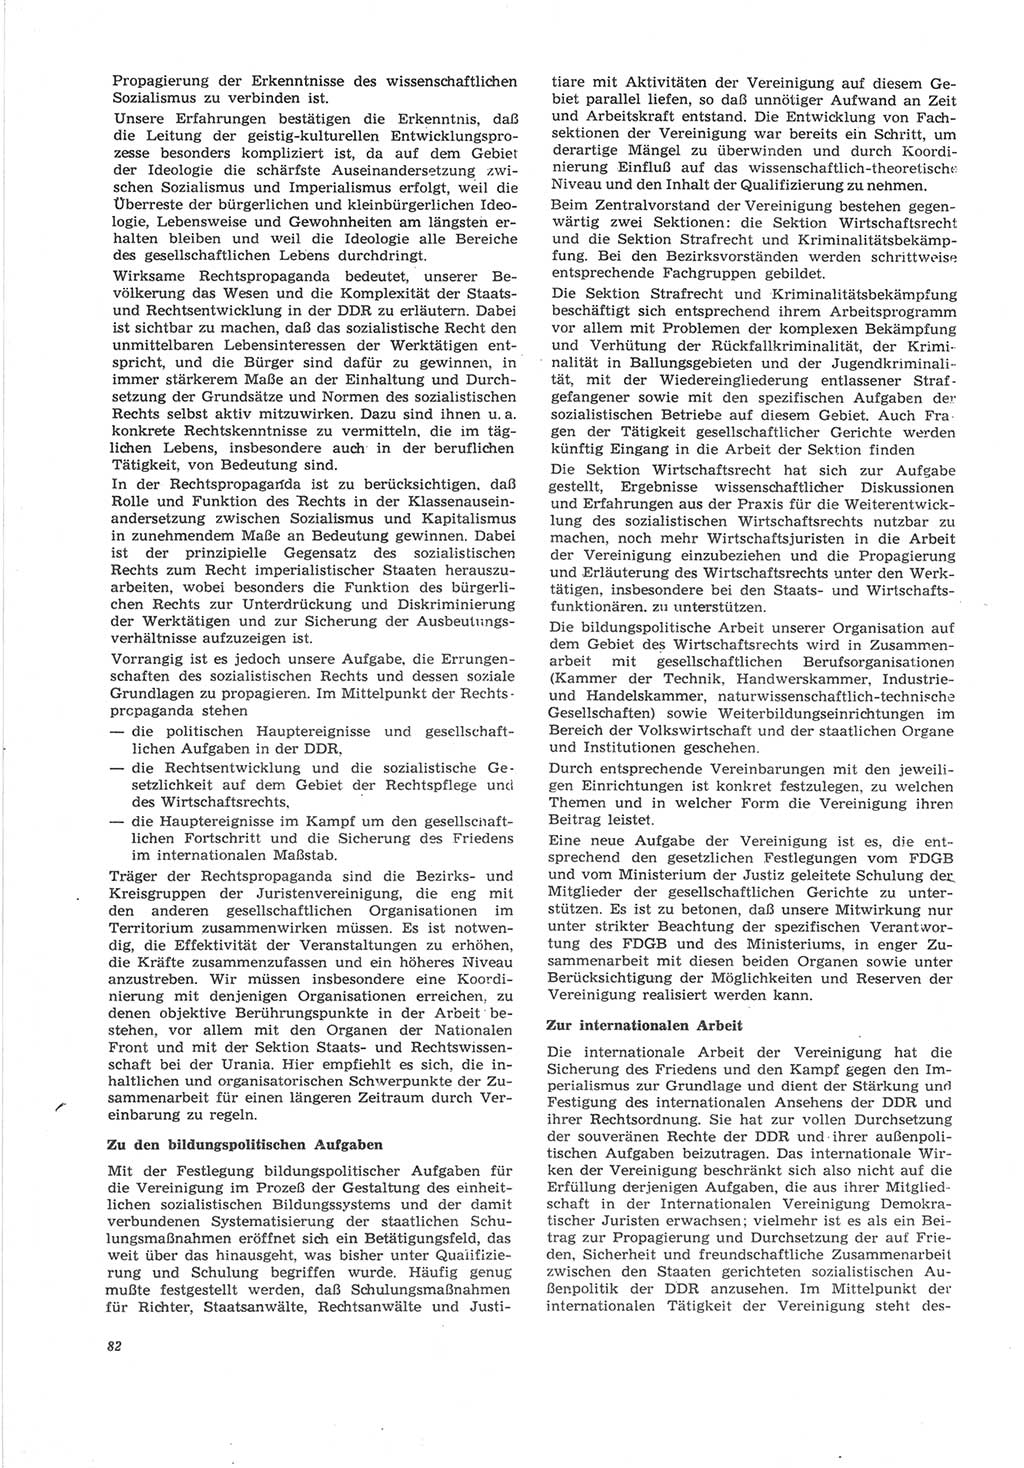 Neue Justiz (NJ), Zeitschrift für Recht und Rechtswissenschaft [Deutsche Demokratische Republik (DDR)], 25. Jahrgang 1971, Seite 82 (NJ DDR 1971, S. 82)